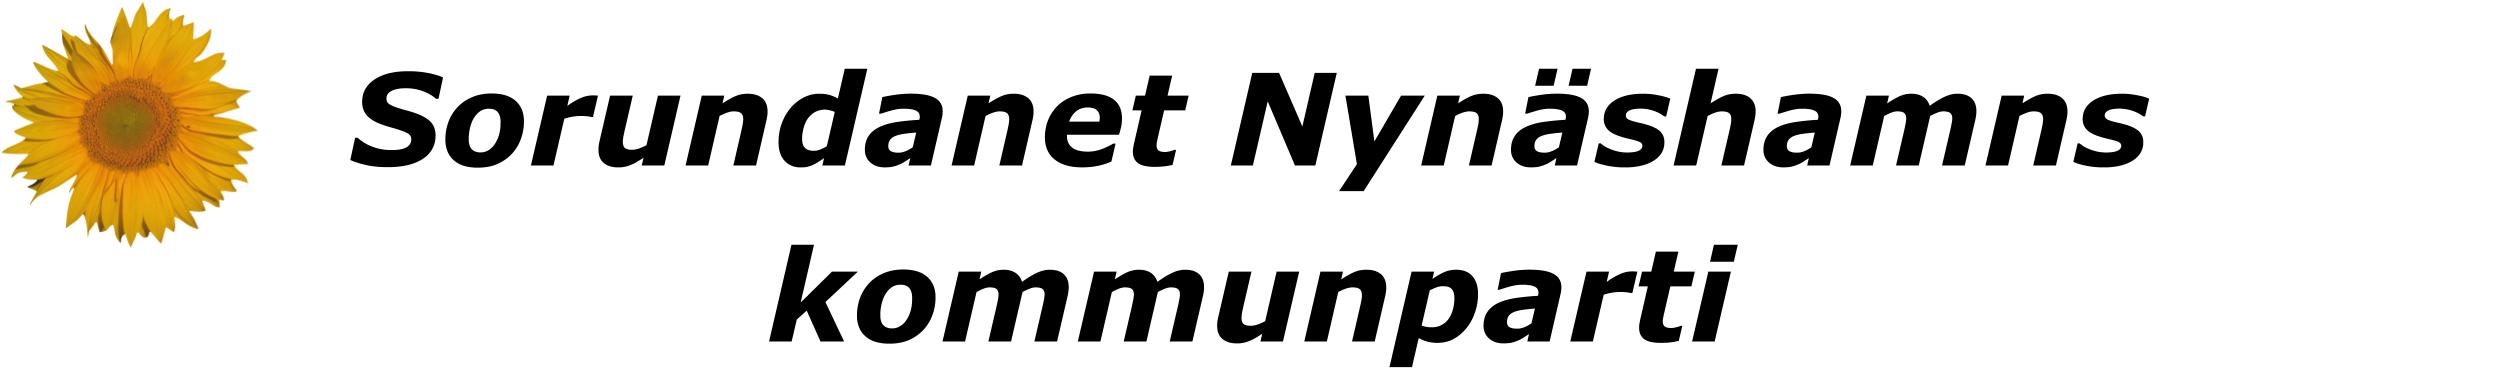 Sorundanet Nynäshamns kommunparti symbol och logotyp!